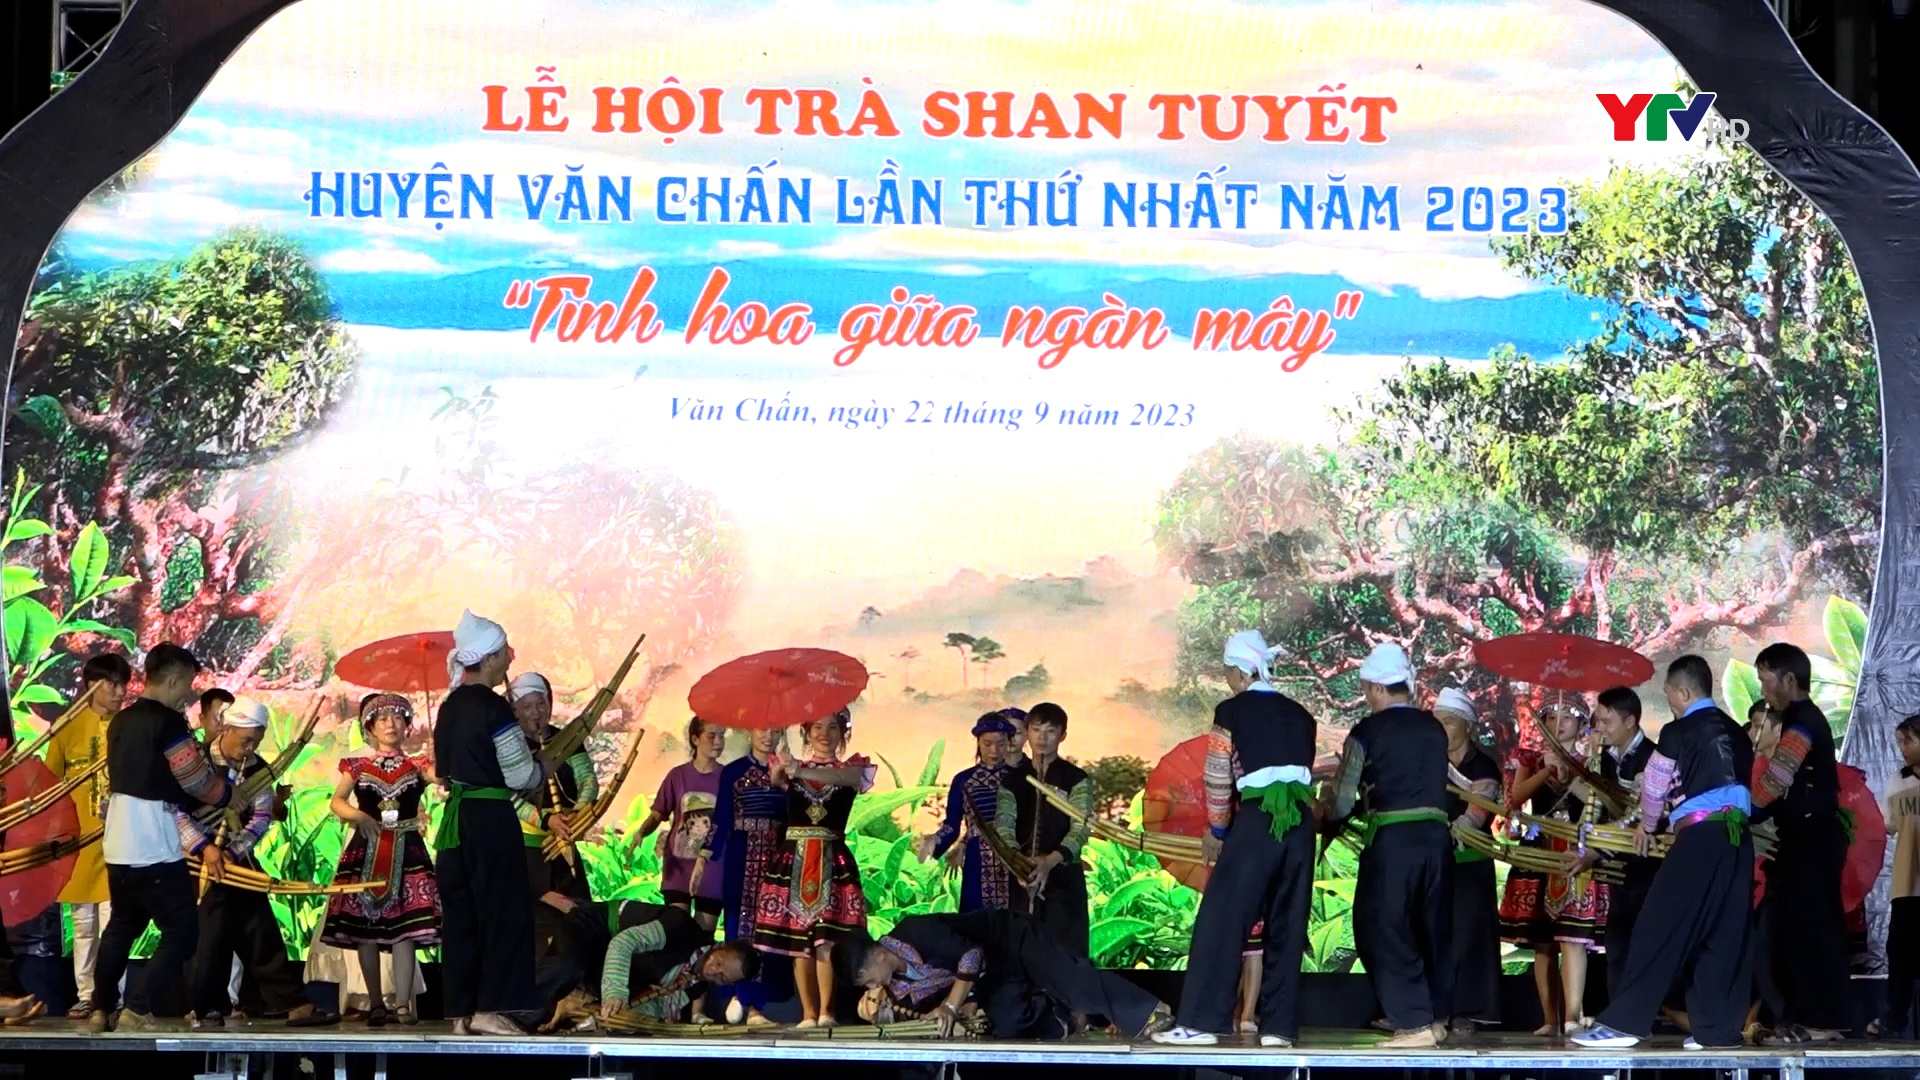 Đồng chí Phó Chủ tịch UBND tỉnh Vũ Thị Hiền Hạnh chỉ đạo sơ duyệt Chương trình nghệ thuật tại Lễ hội trà Shan tuyết huyện Văn Chấn lần thứ nhất năm 2023